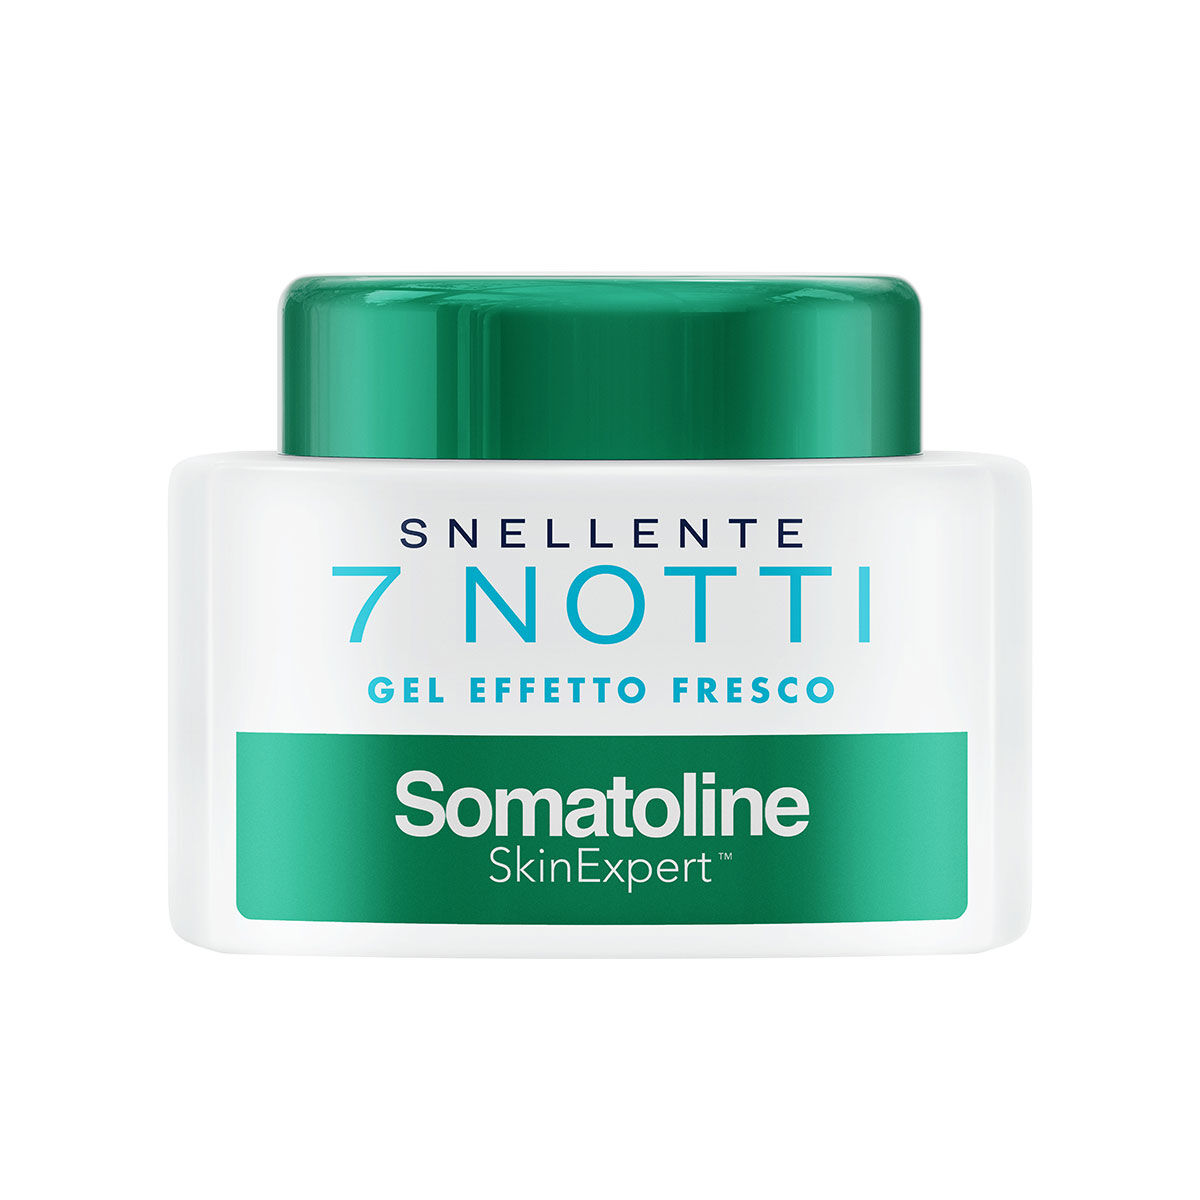 Somatoline Skinexpert Snellente 7 Notti Gel Effetto Fresco Trattamento Corpo Snellente Sale Integrale 400ml